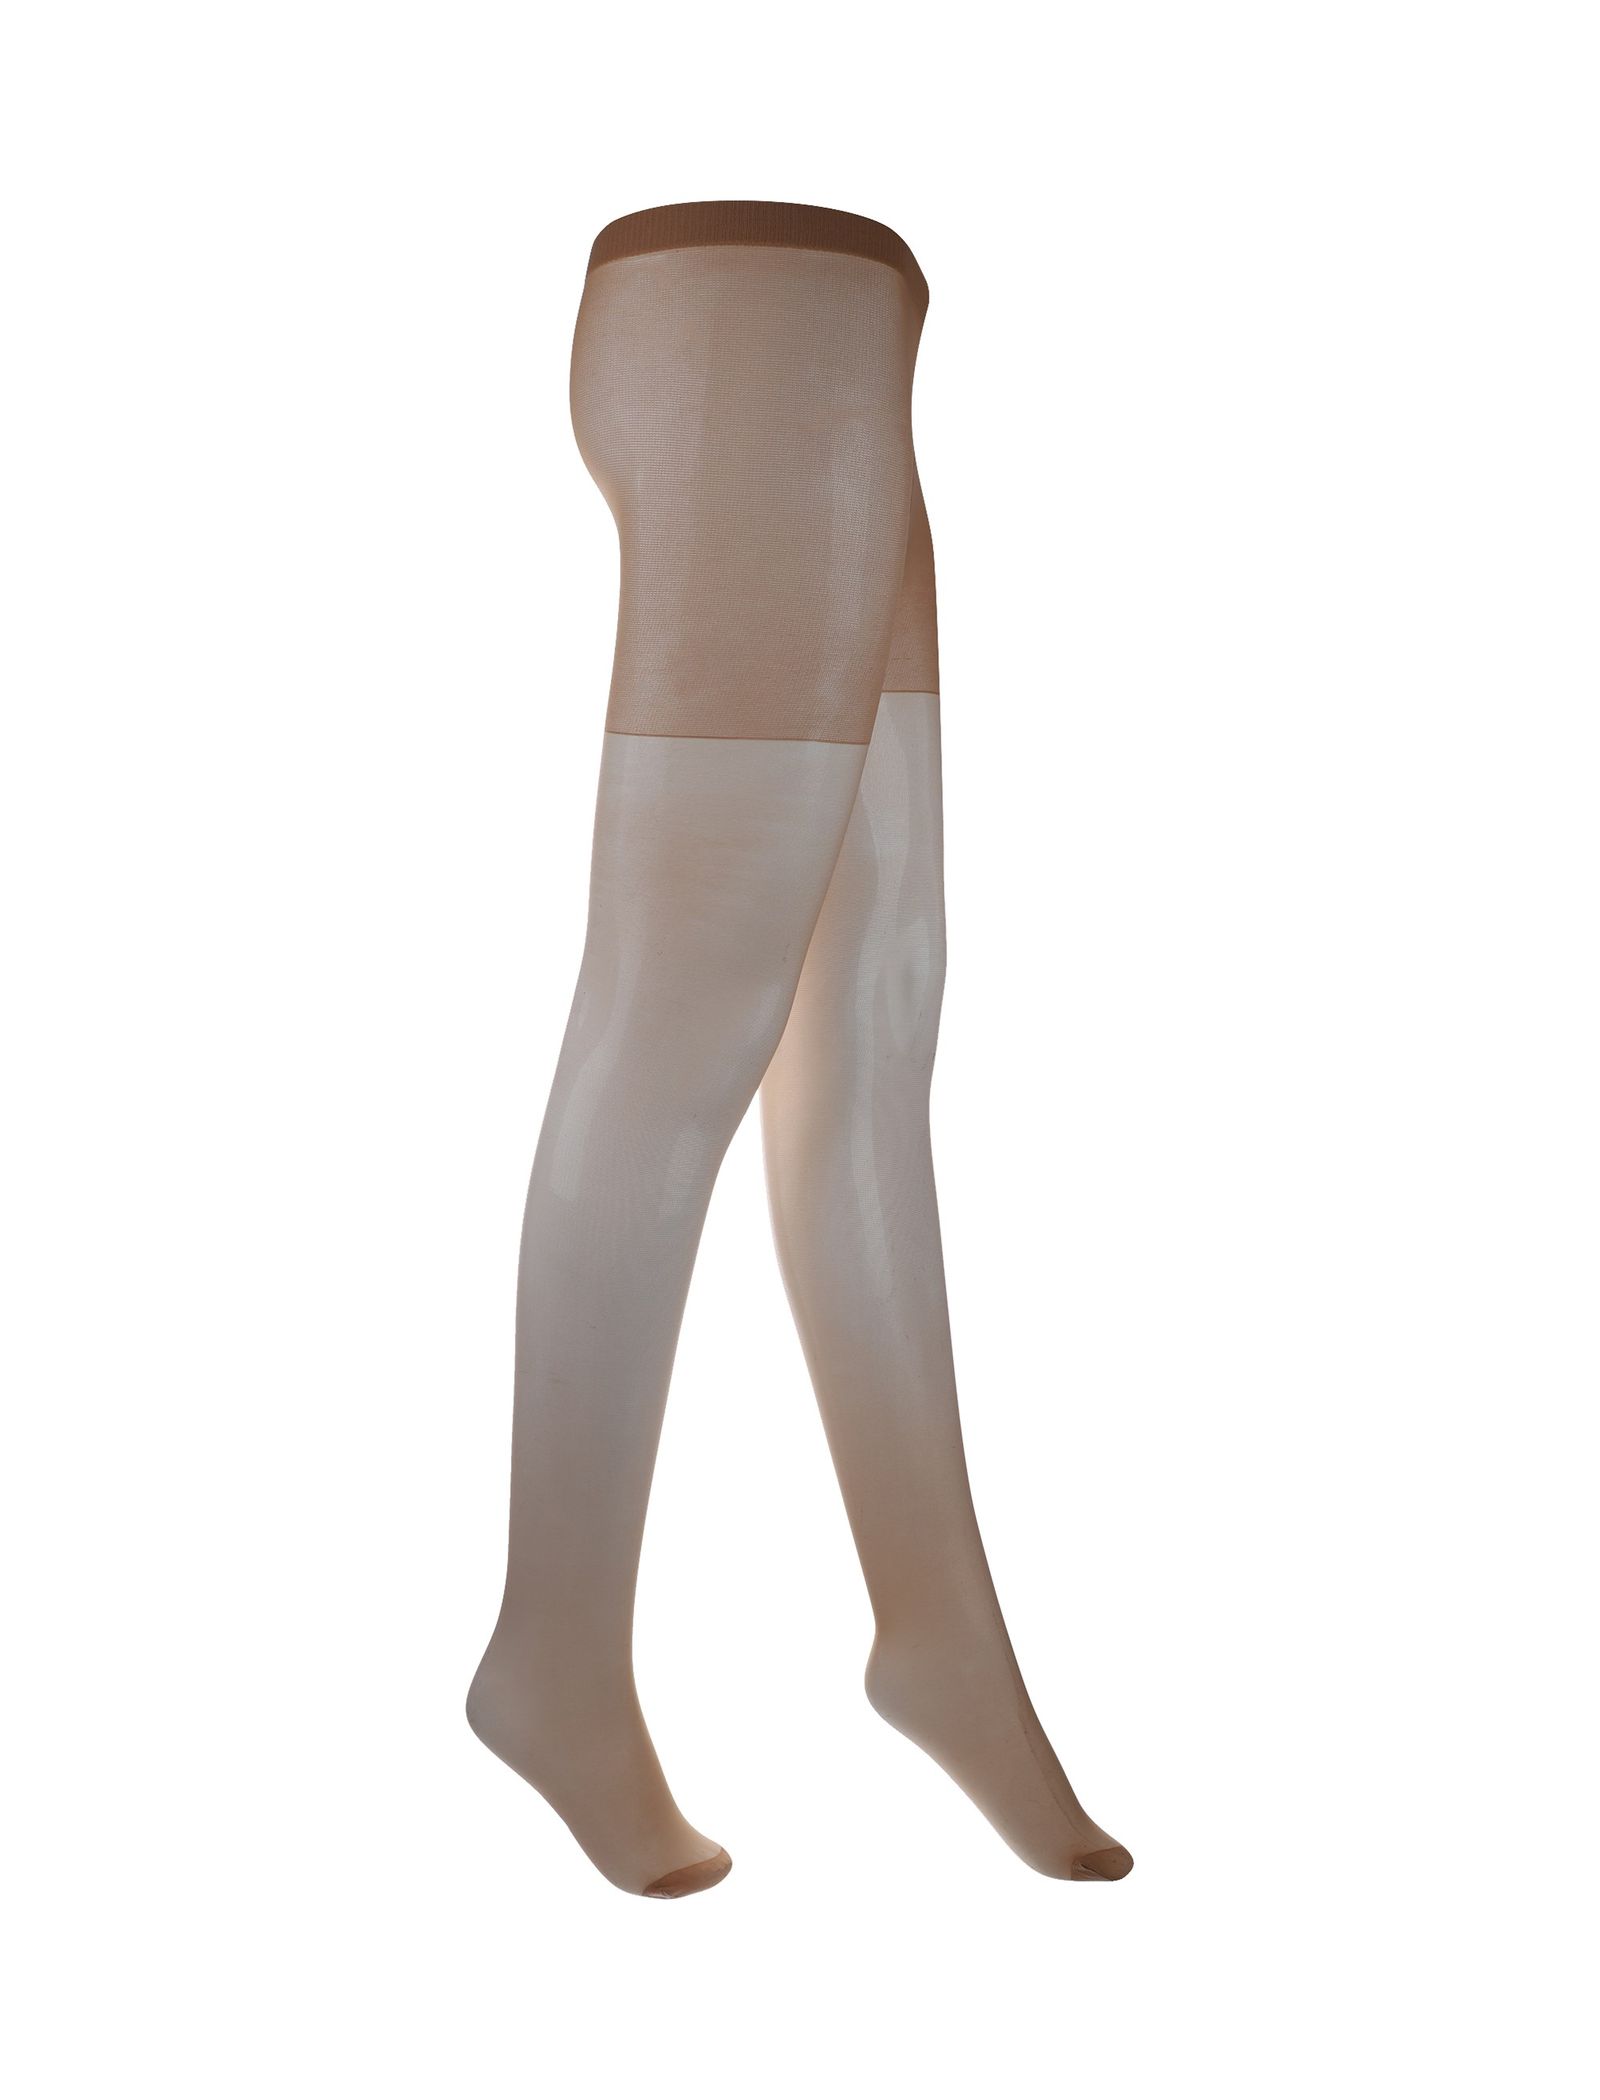 جوراب شلواری شفاف زنانه بسته 3 عددی - دبنهامز - رنگ پا - 3